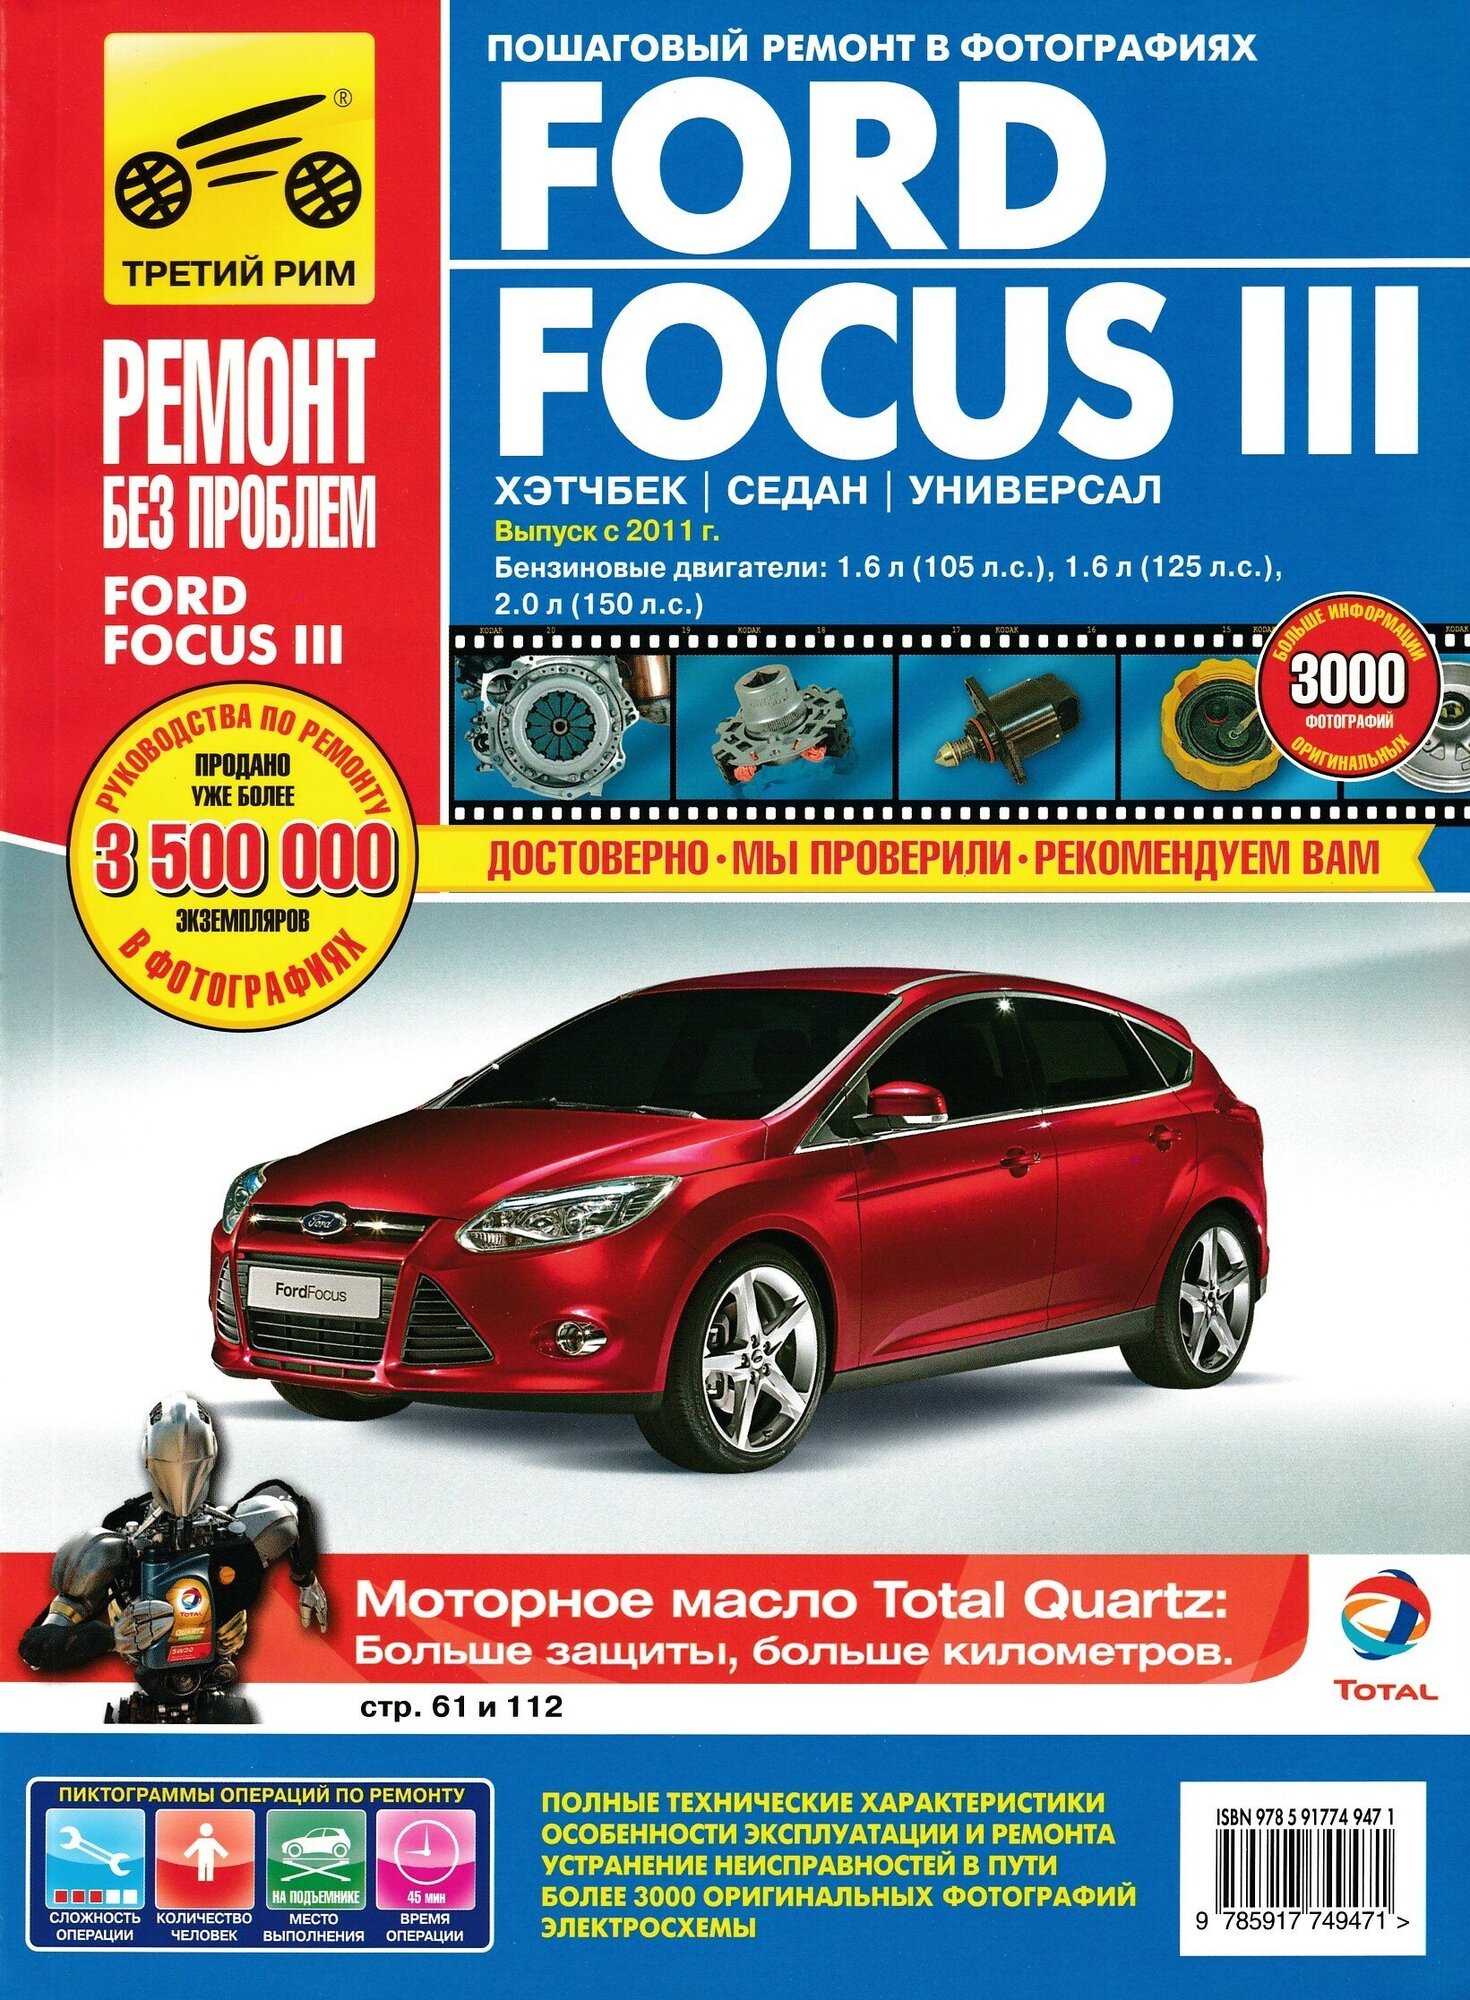 Ford Focus III хэтчбек / седан / универсал. Выпуск с 2011 г. Руководство по эксплуатации, техническому обслуживанию и ремонту в цветных фотографиях.